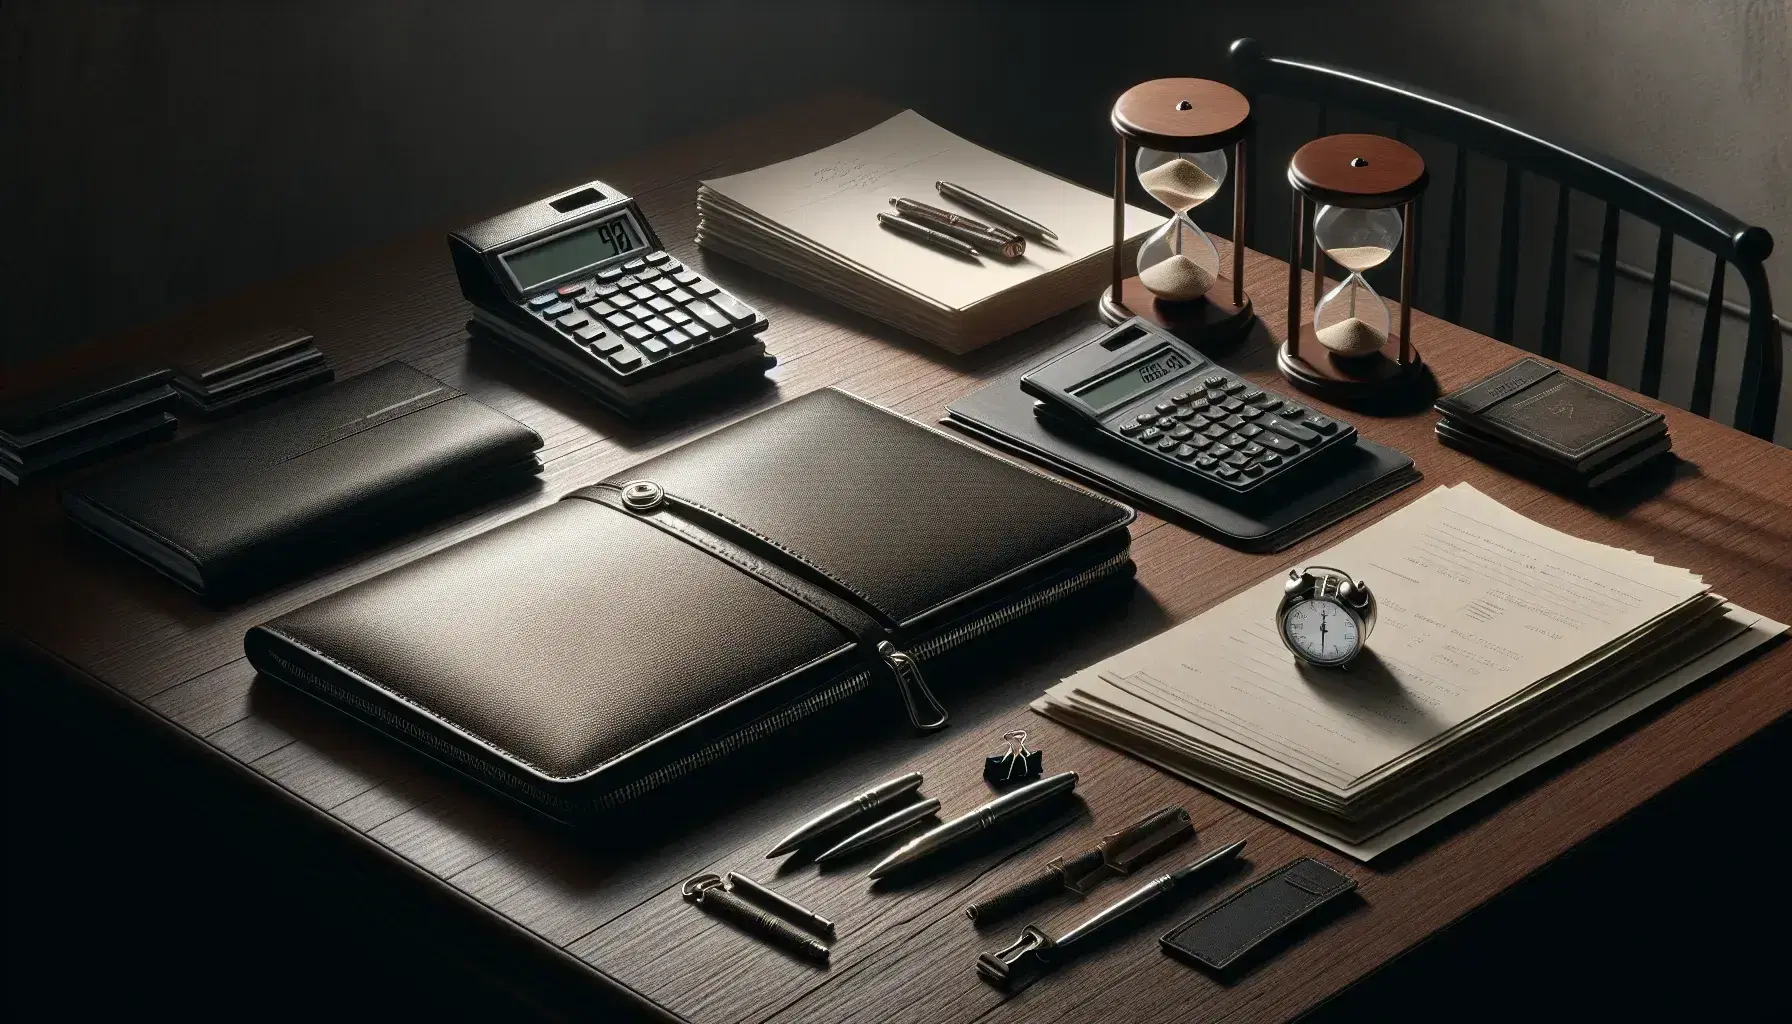 Mesa de madera oscura con portafolio de cuero negro, calculadora científica gris, papeles blancos, reloj de arena y bolígrafo metálico bajo luz suave.